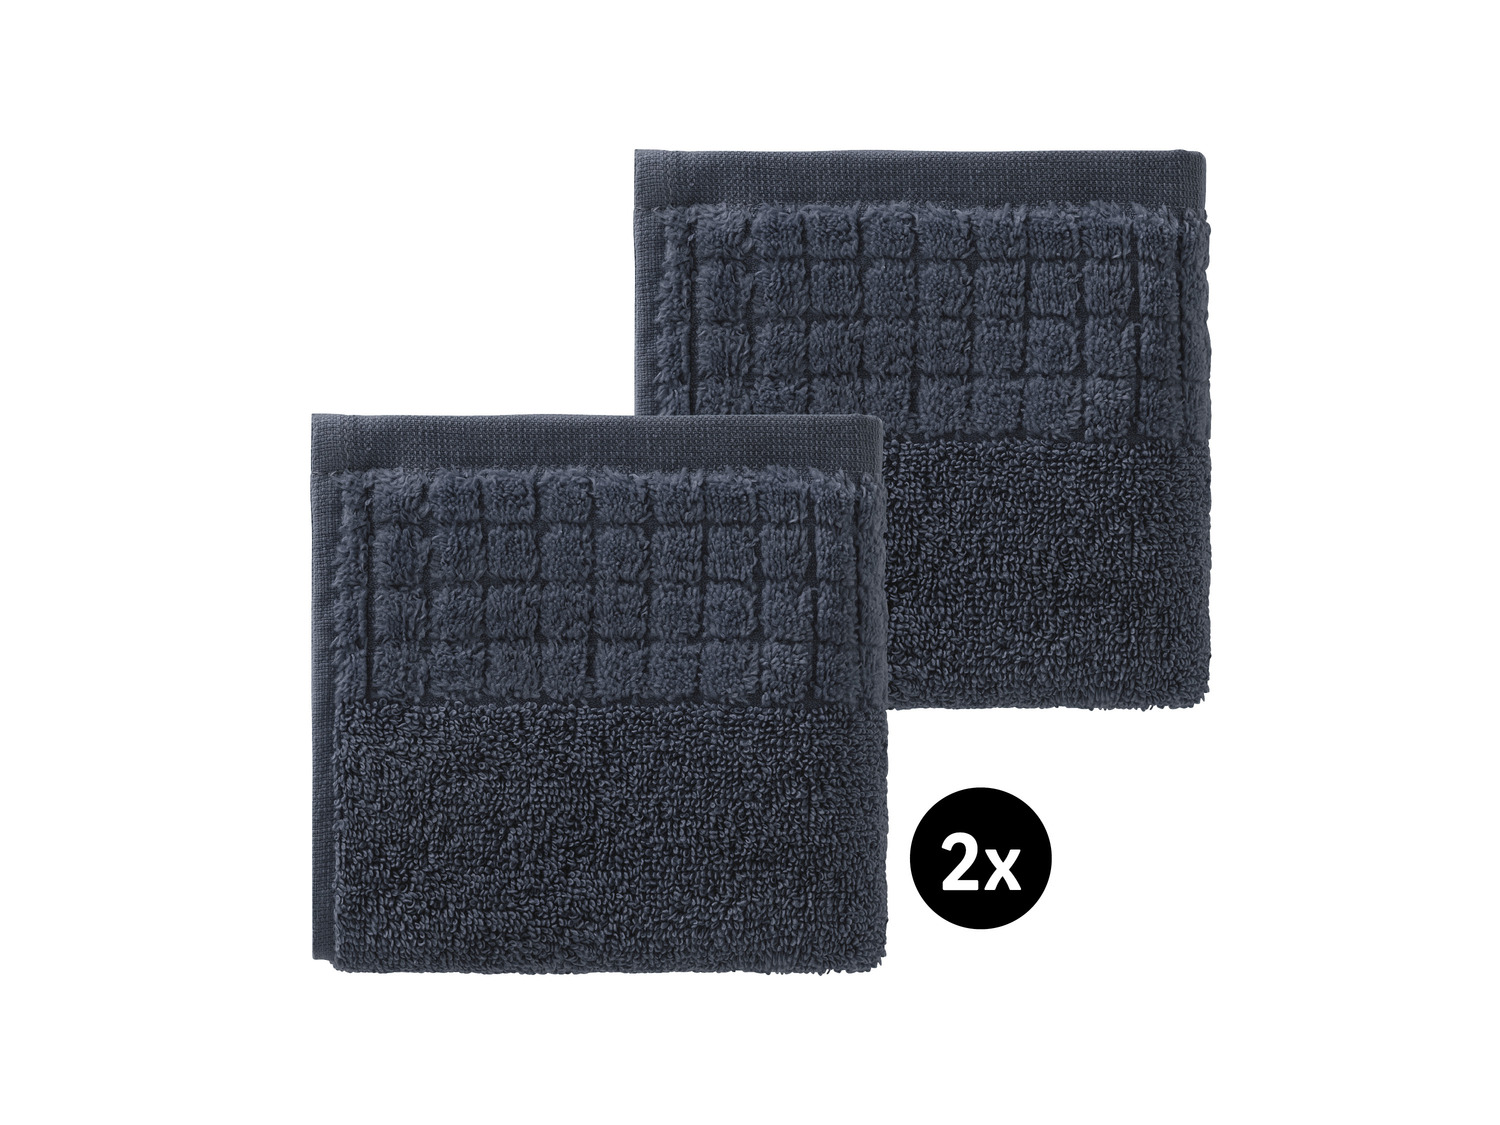 Ręczniki 30 x 50 cm, 2 szt. Miomare, cena 9,99 PLN 
6 kolorów 
- 100% bawełny
- ...